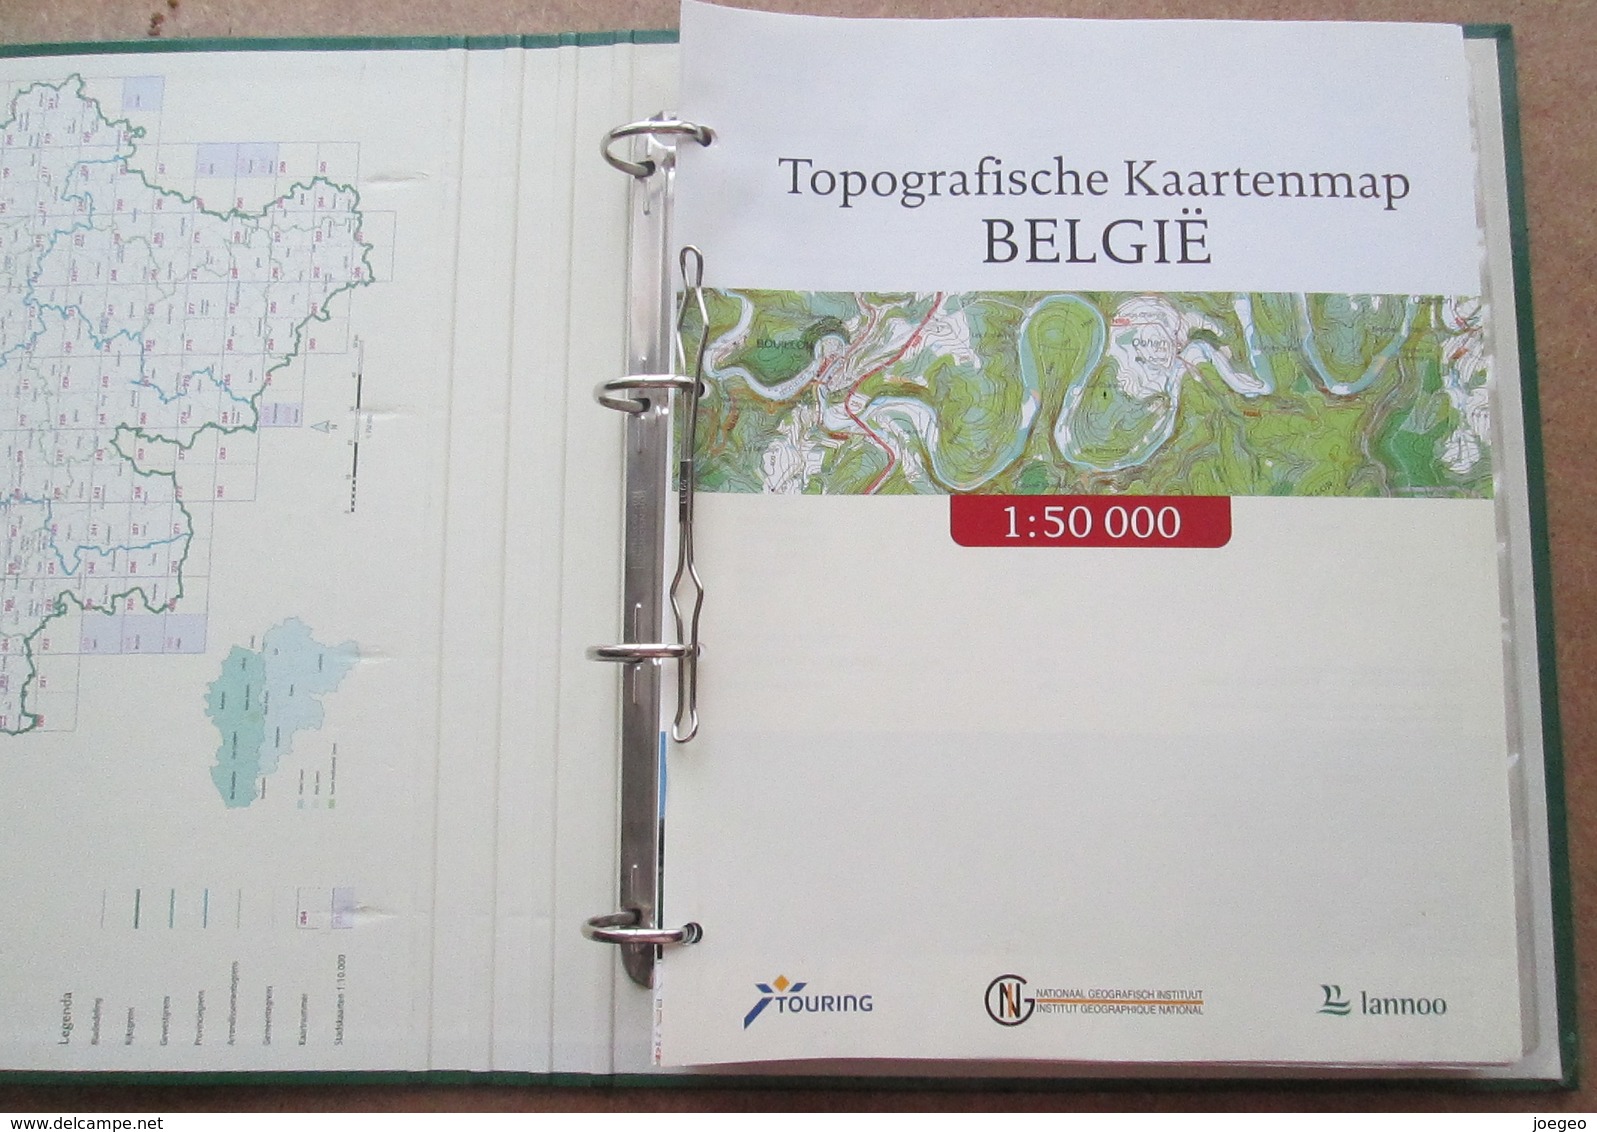 Topografische Kaartenmap België Met 1500 Toeristische Uitstapideeën / Touring Lannoo - Pratique